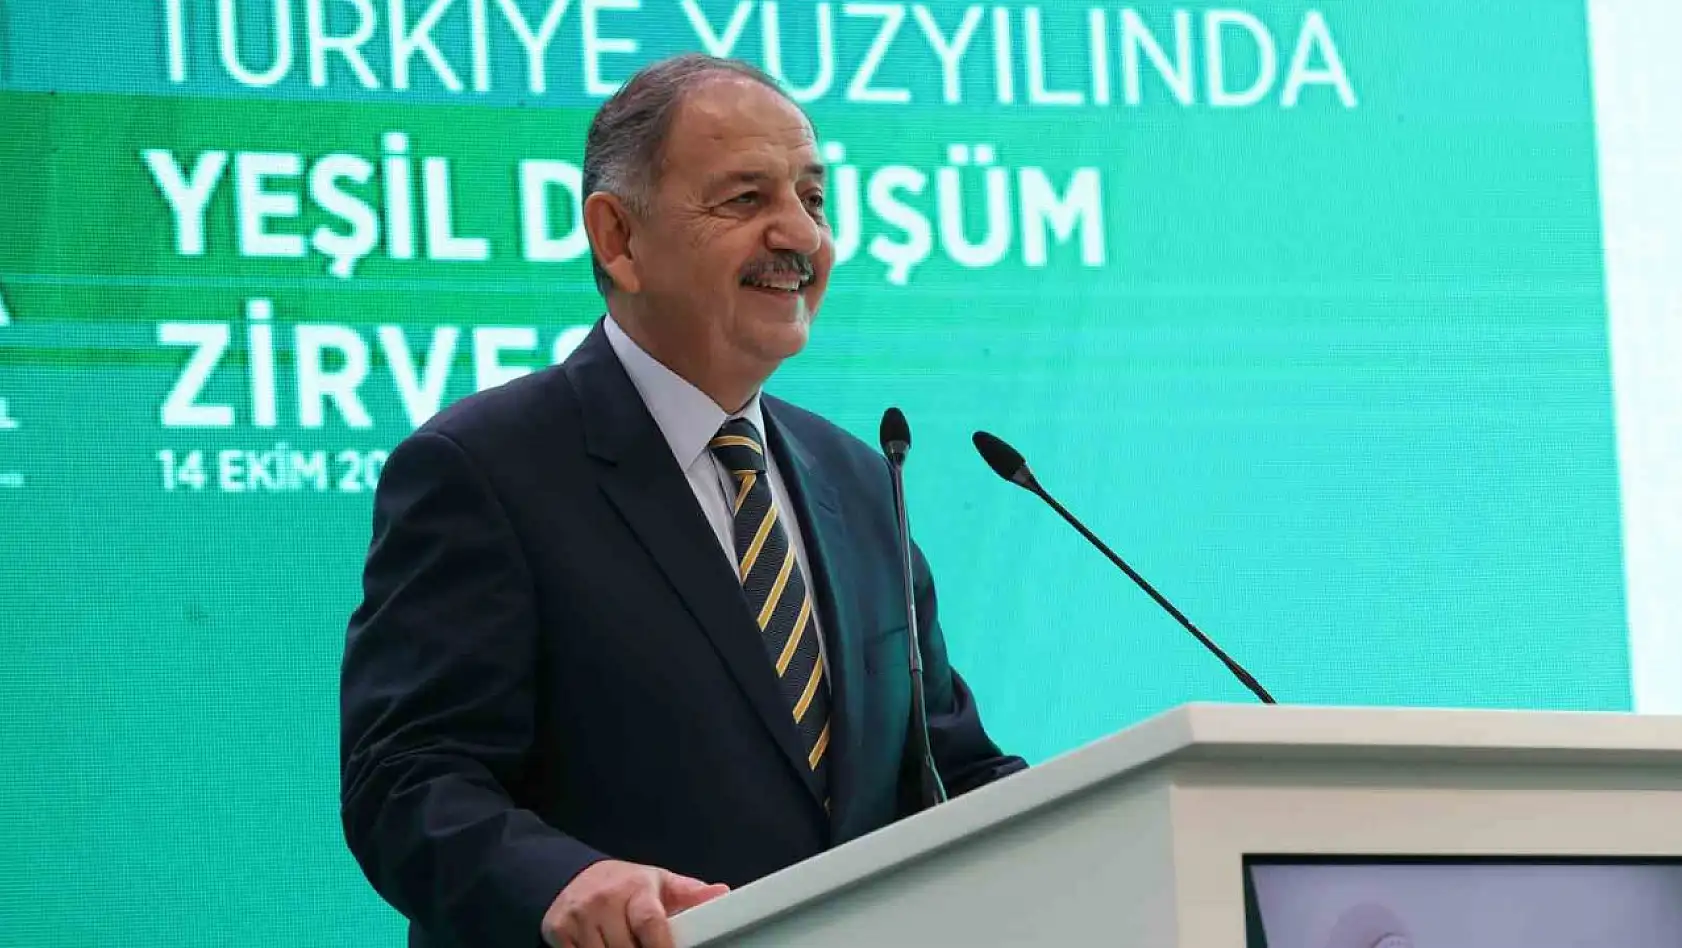 Bakan Özhaseki: 'Yeşil dönüşüm tercih değil zorunluluktur'